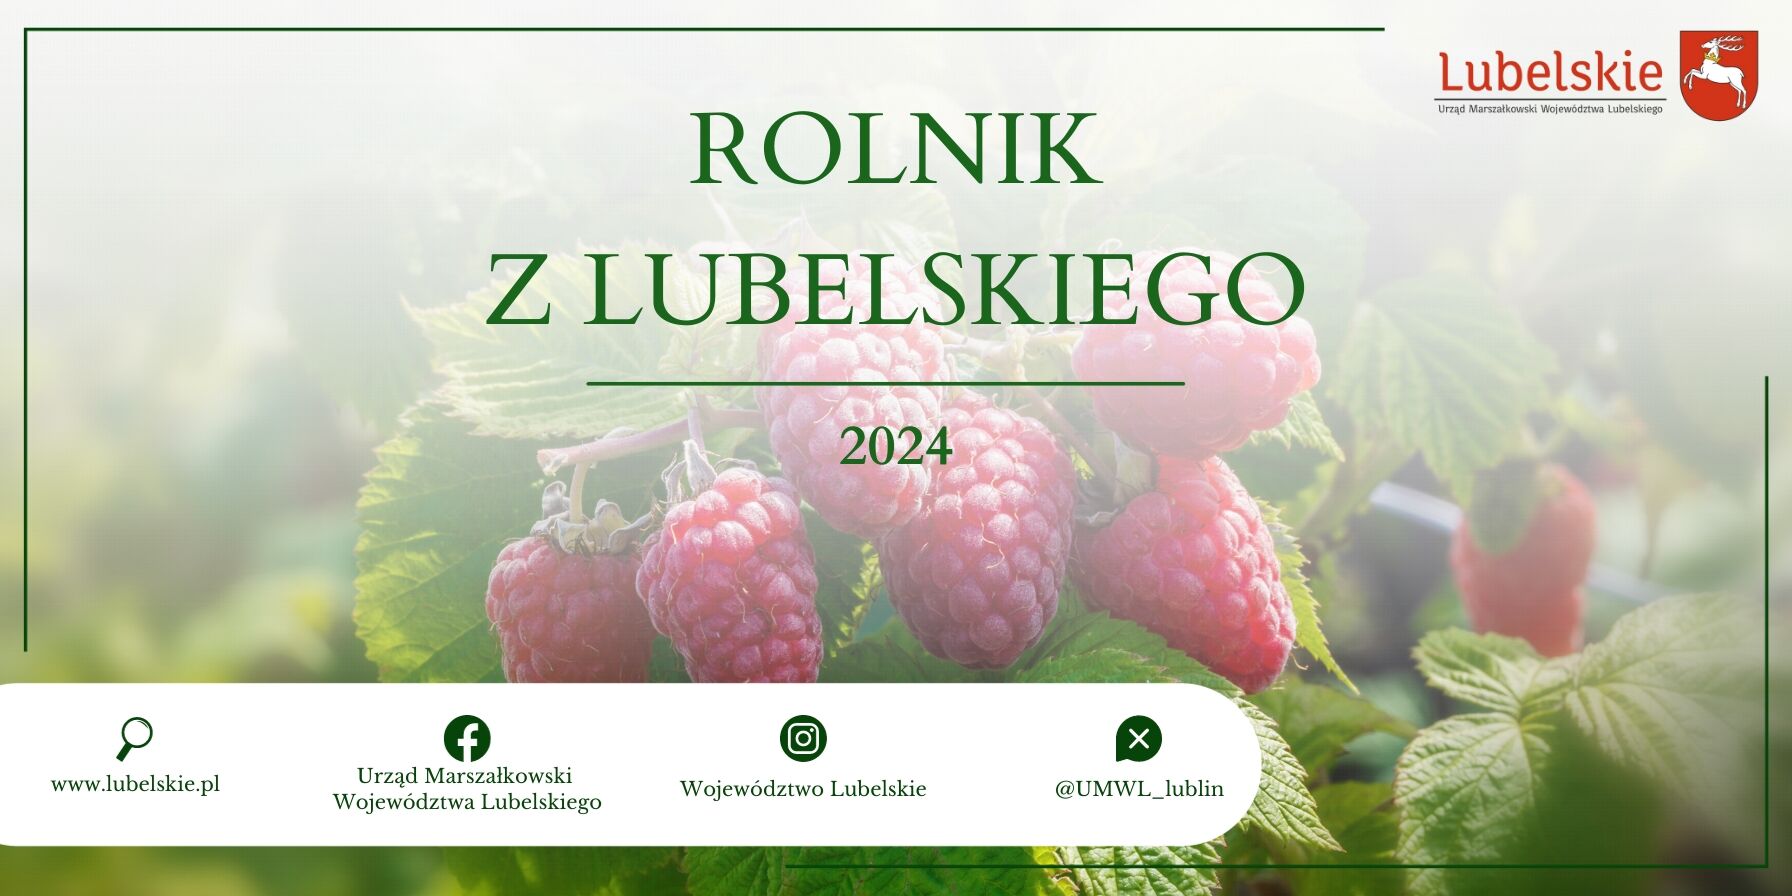 Opis alternatywny: Baner promocyjny z napisem "Rolnik z Lubelskiego 2024" i wizerunkiem dojrzałych malin na tle zieleni. Zawiera logotypy i adresy internetowe urzędów.